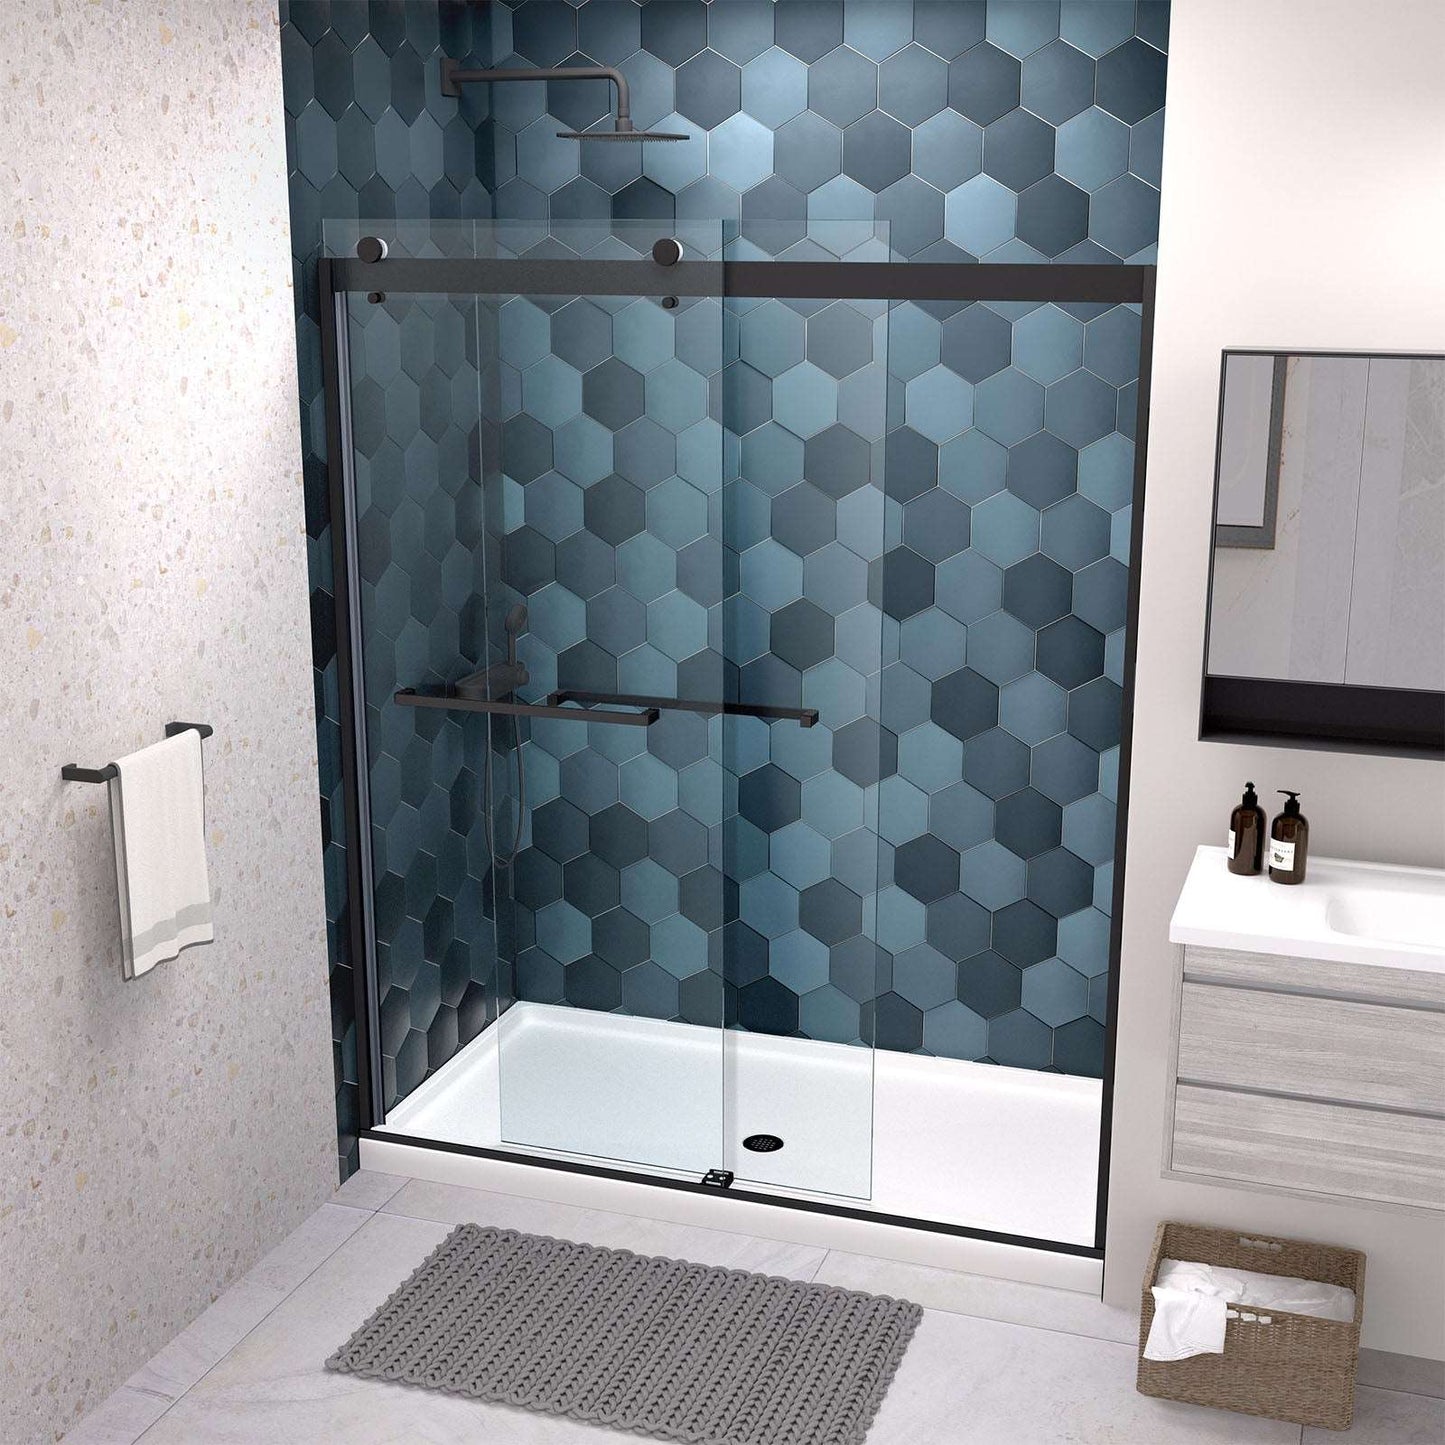 Sliding Glass Shower Doors Semi-Frameless color:chrome